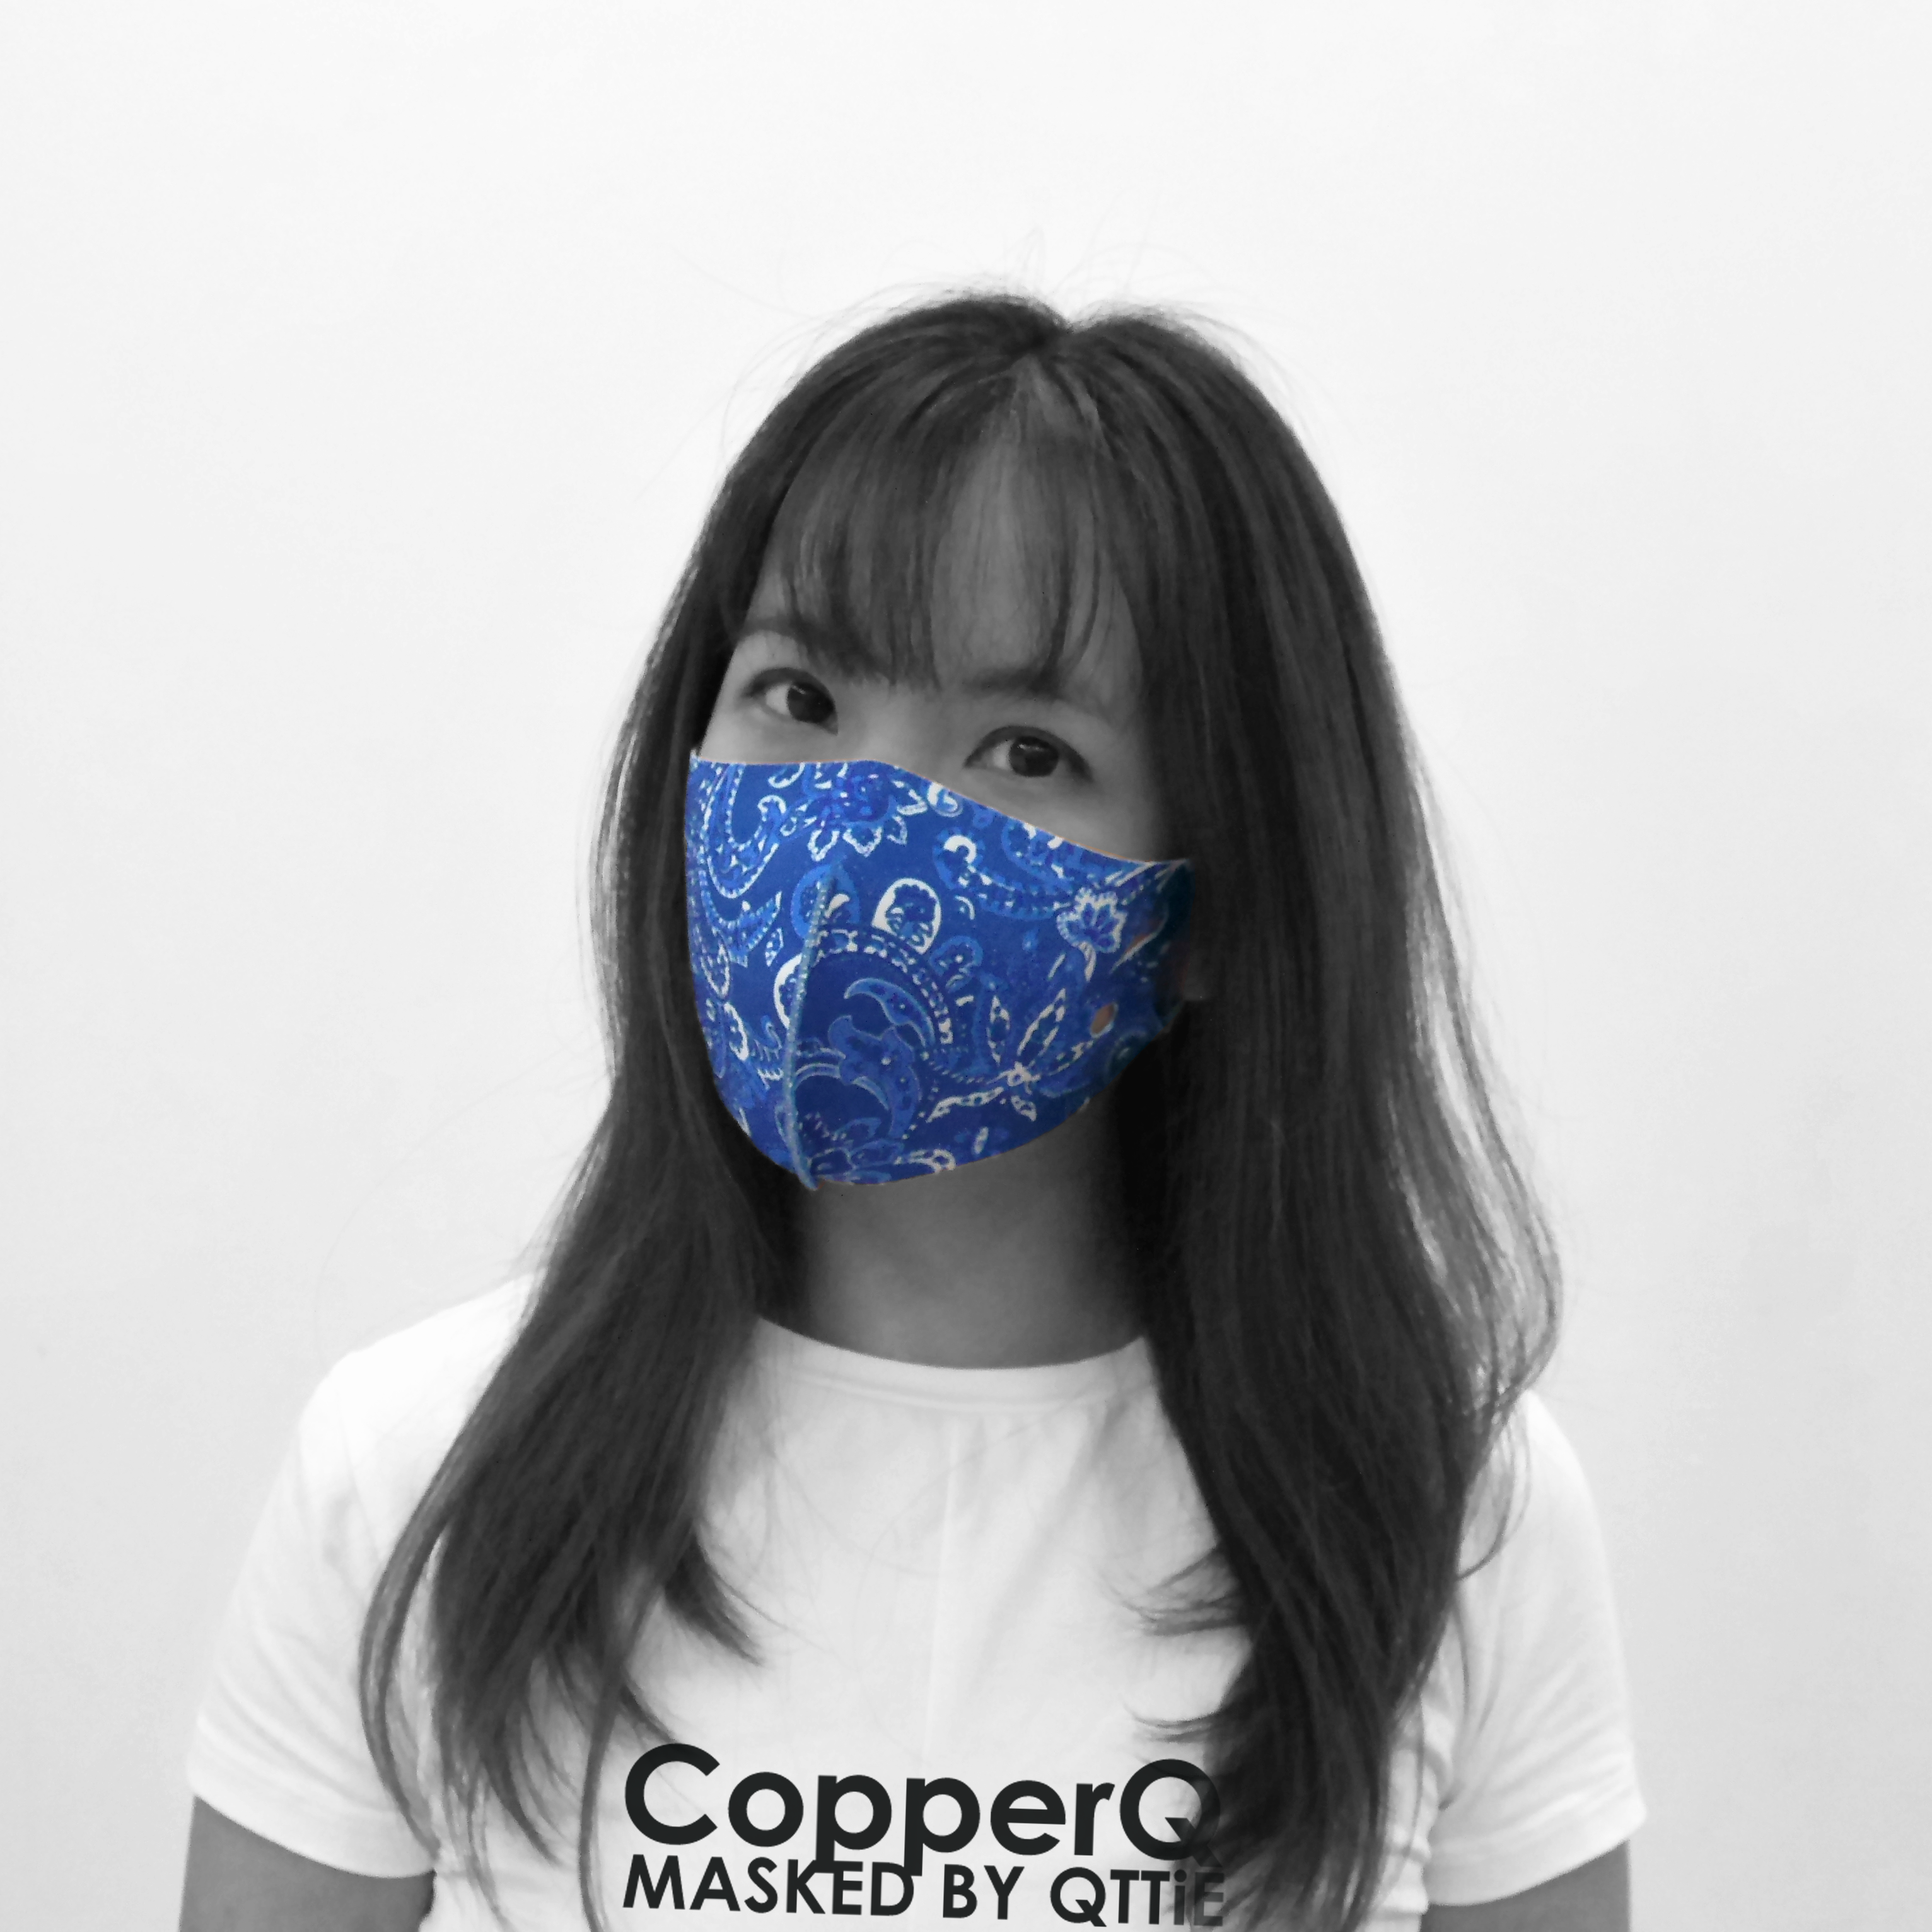 CopperQ Masked by Qttie Blue Paisley